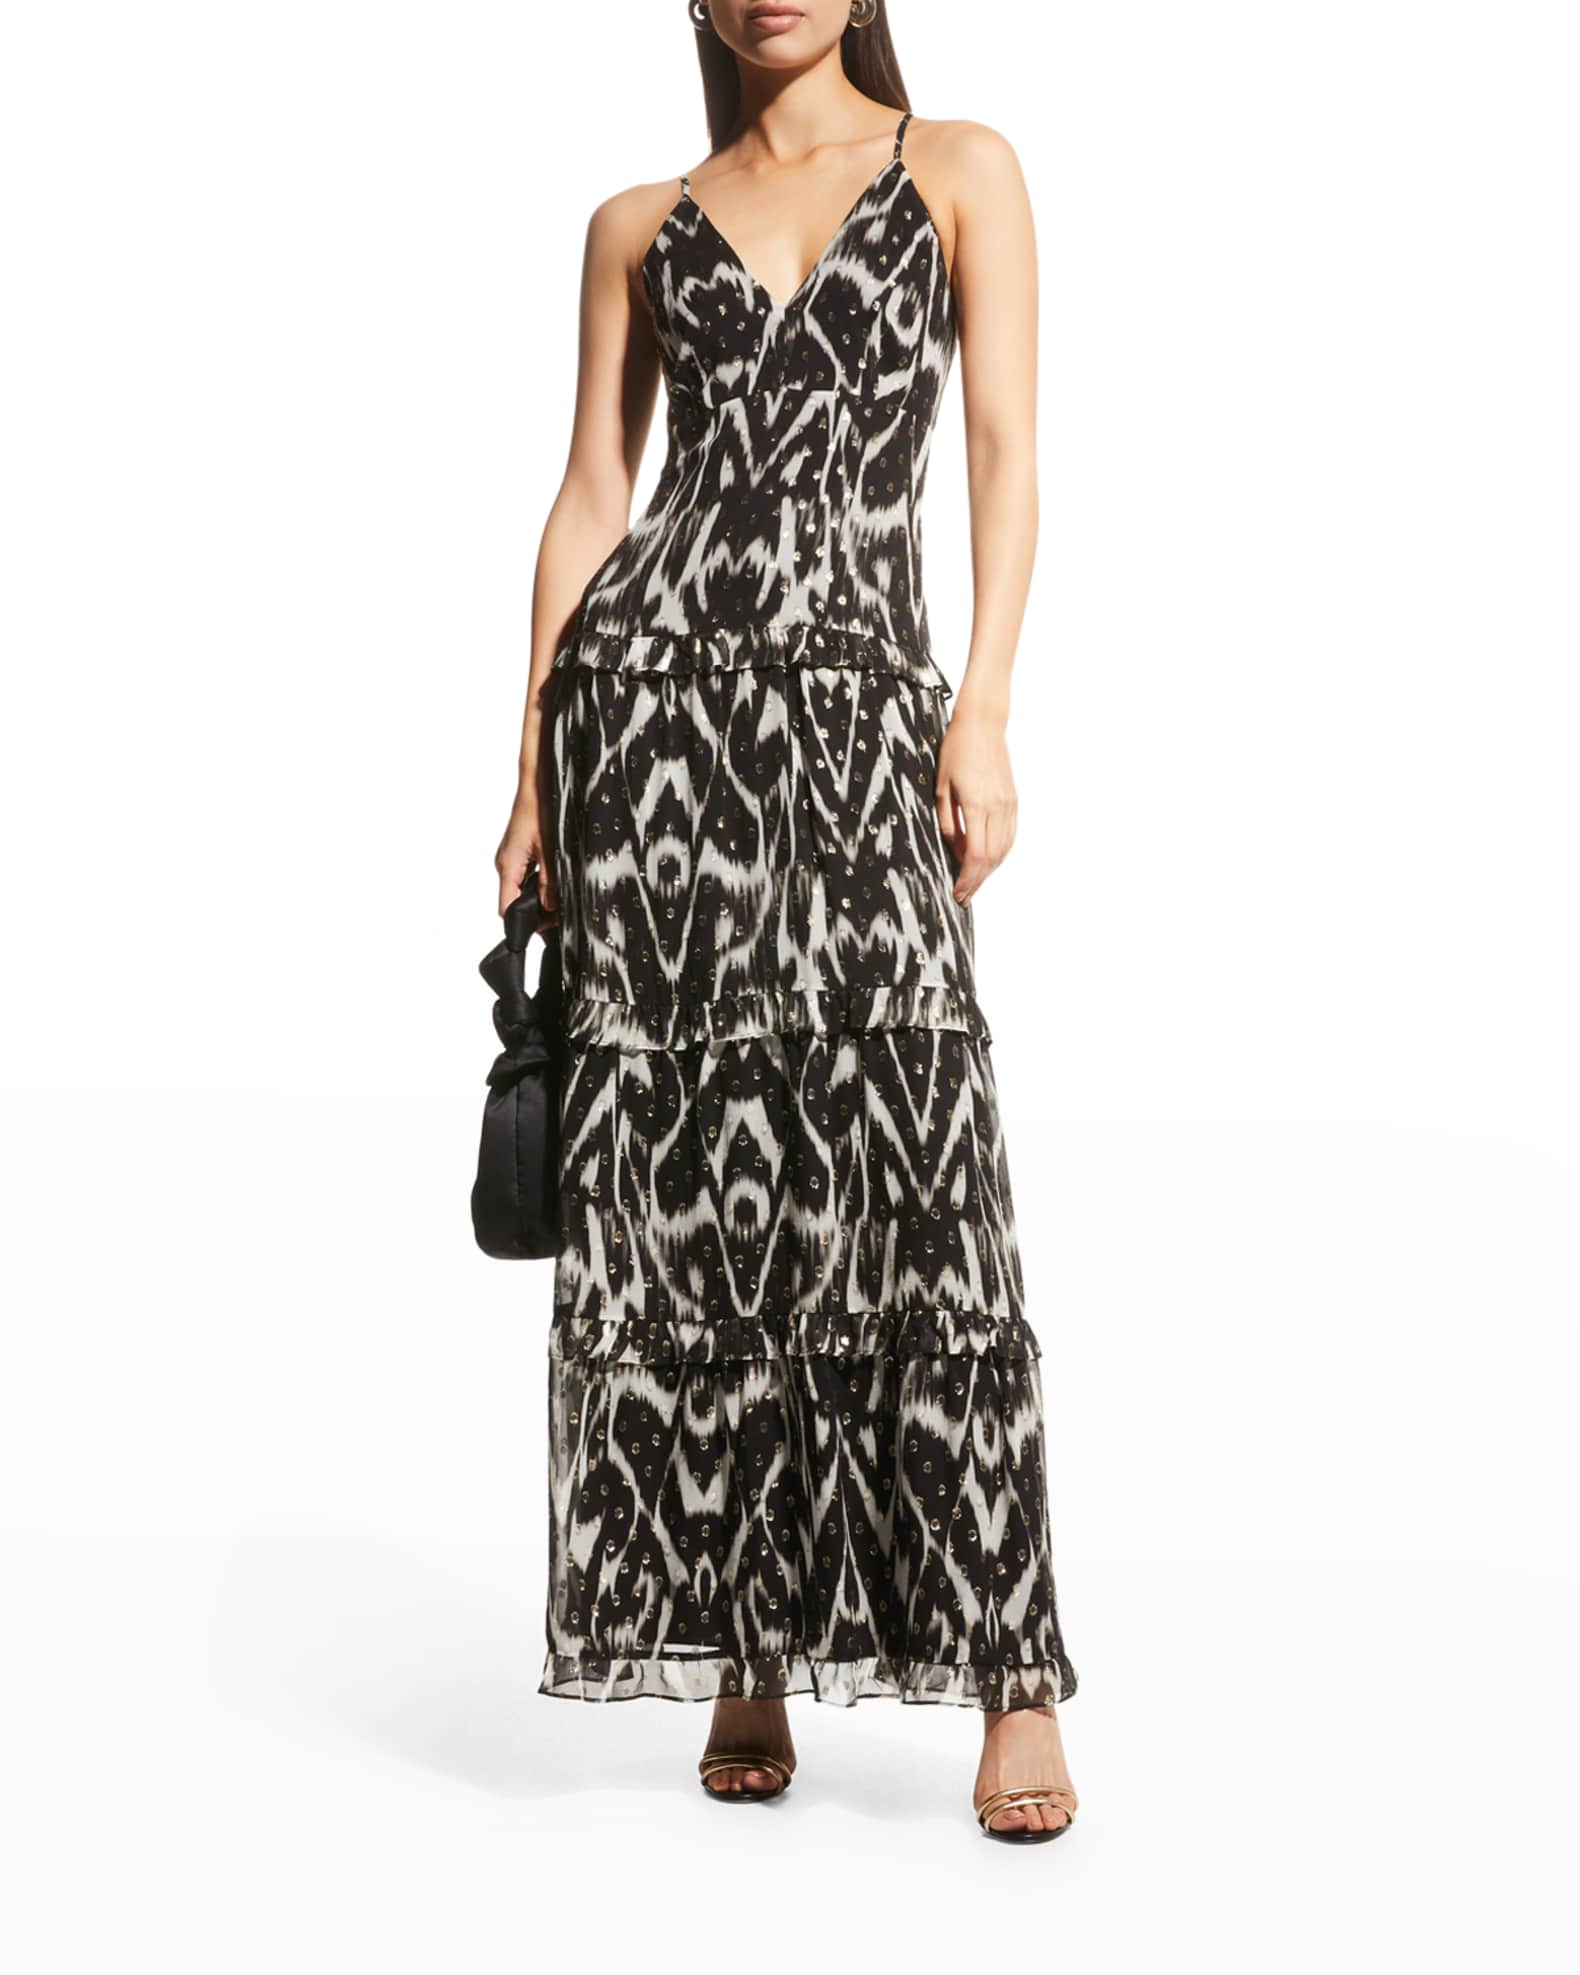 Nicole Miller Ikat Metallic Sleeveless Maxi Dress | Neiman Marcus